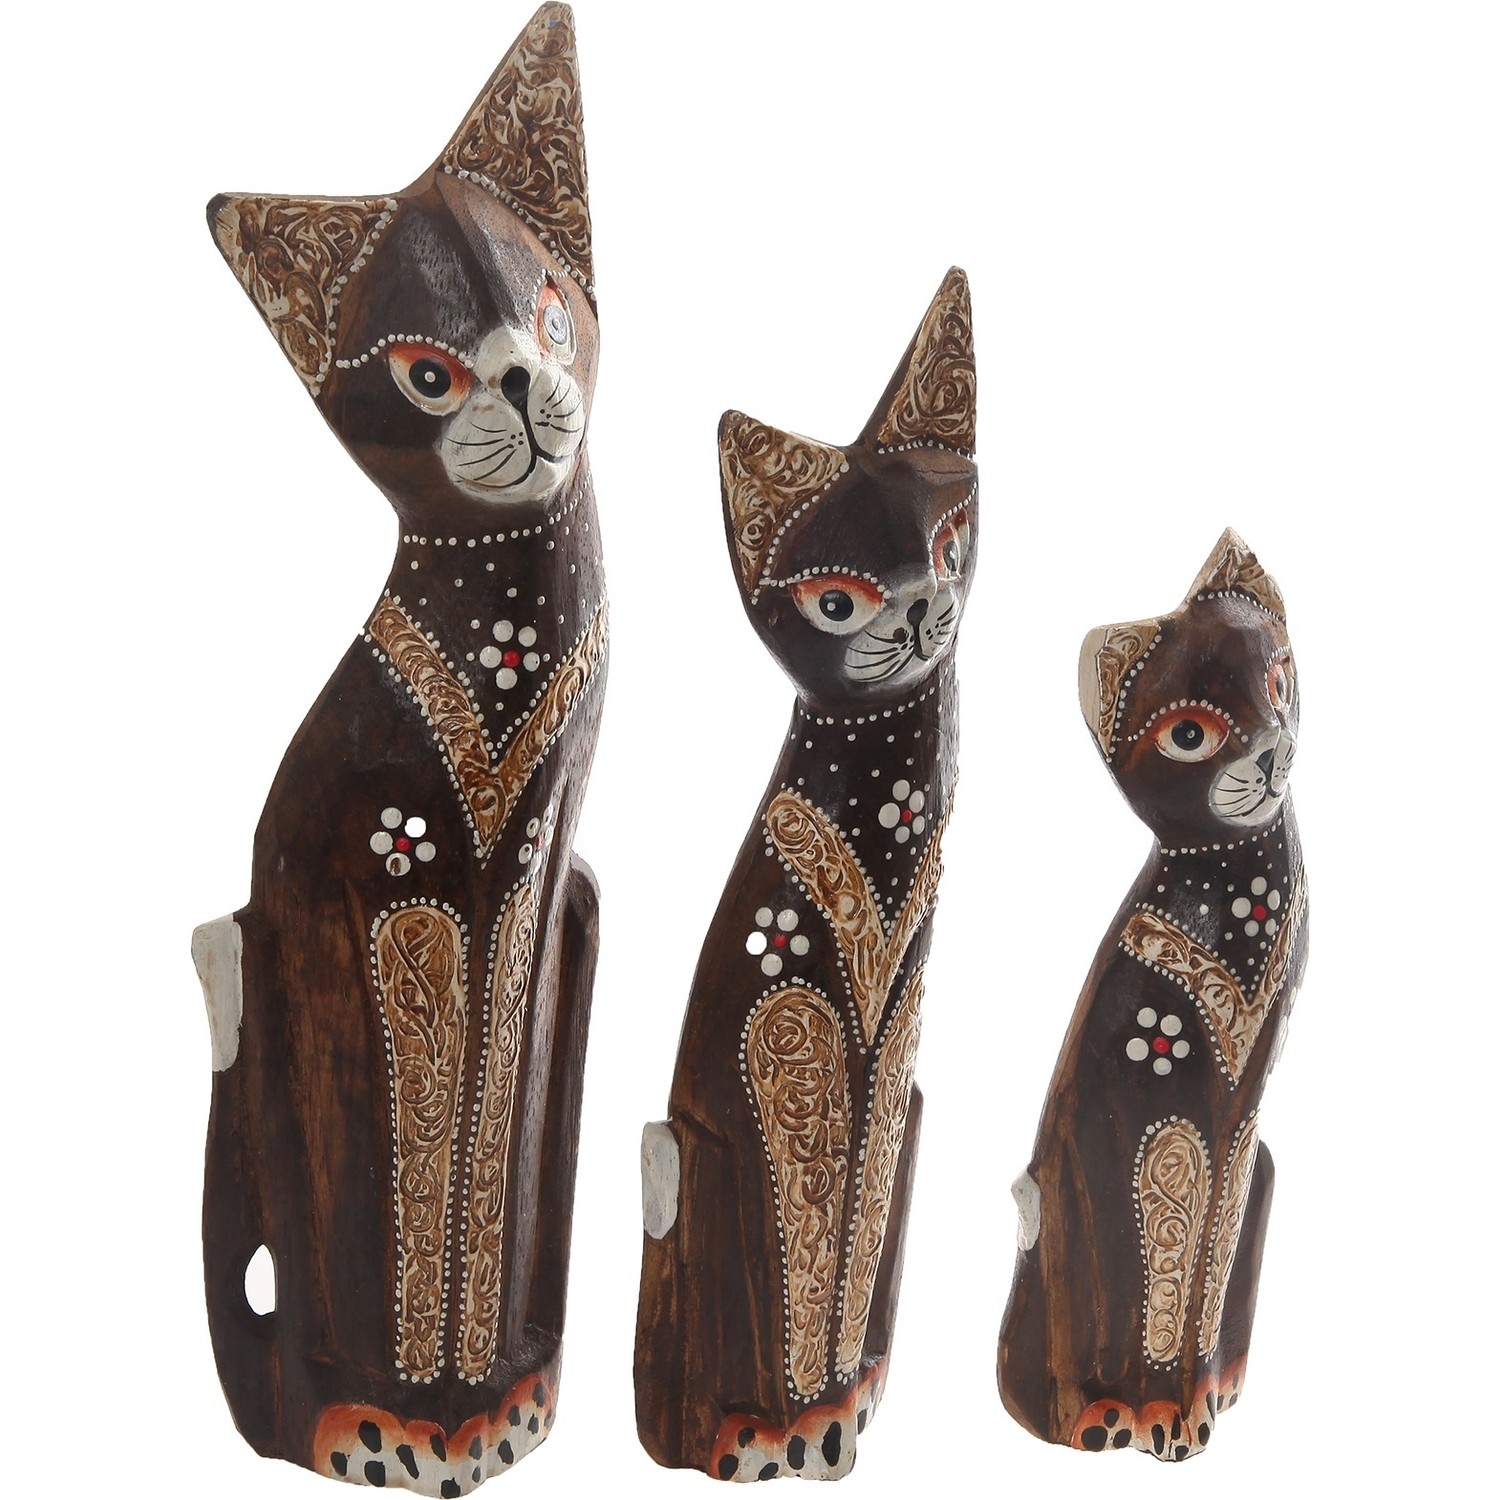 Otantik Ahşap Kedi Figürlü Dekoratik Süs Eşyası Büyük Boy Fiyatı